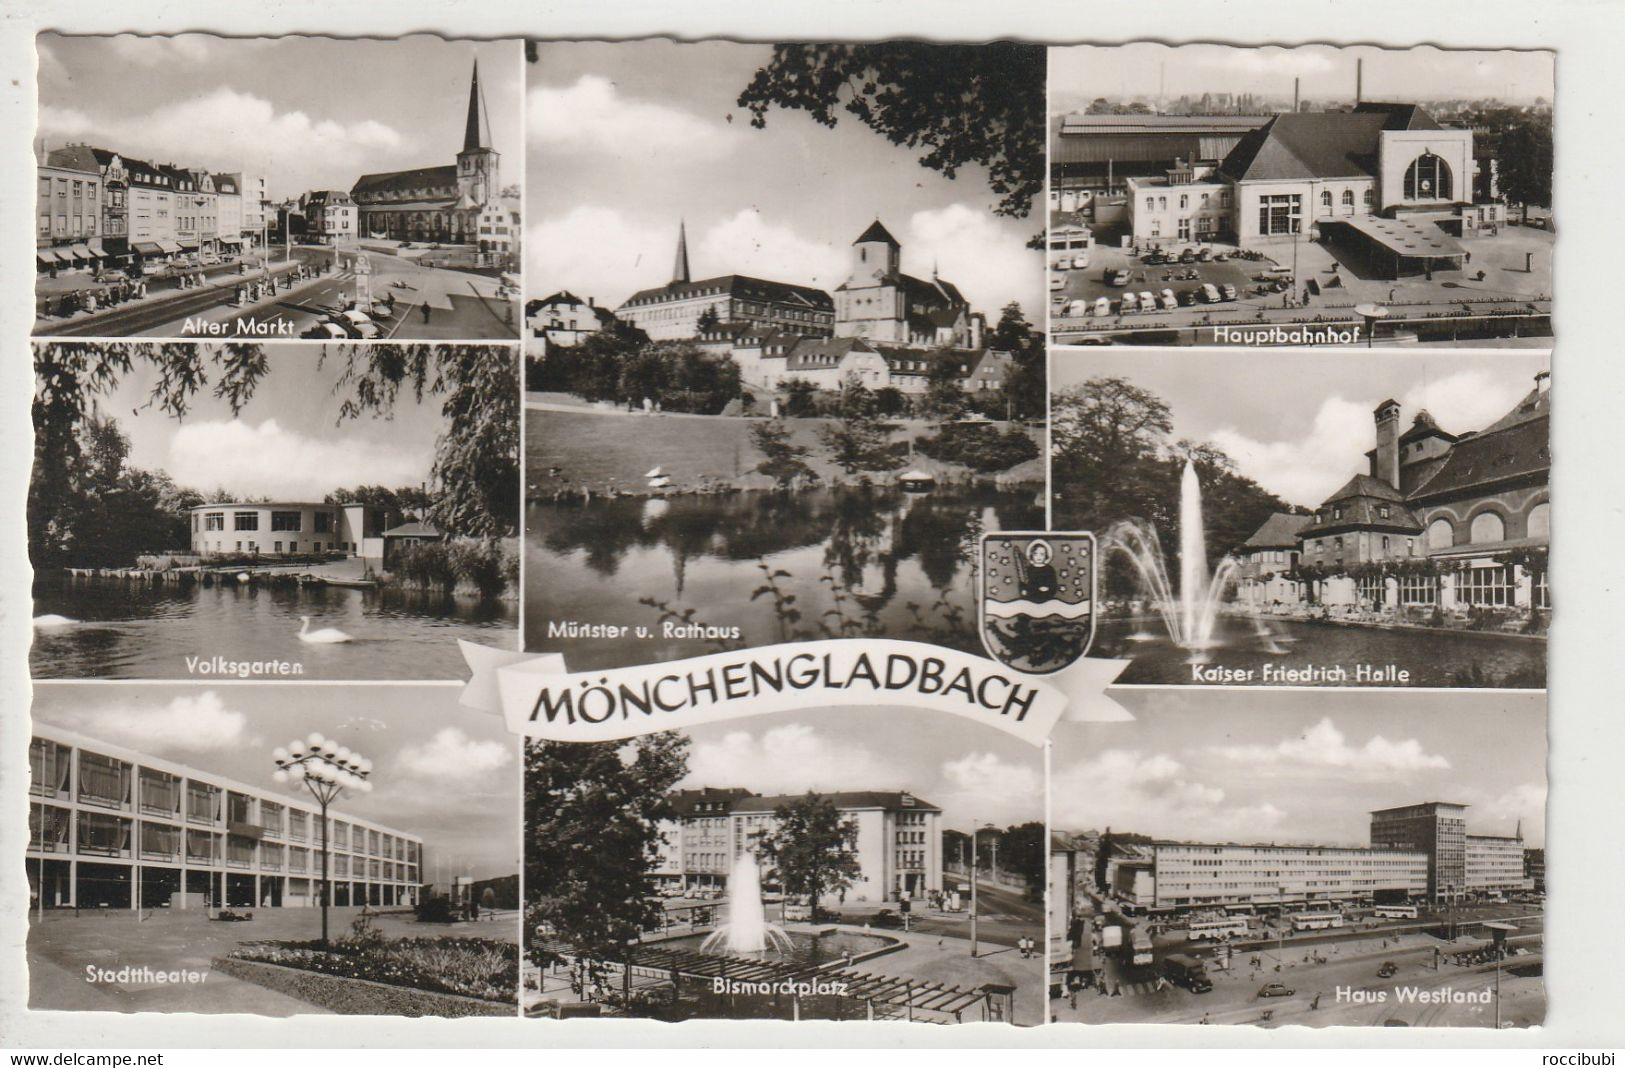 Mönchengladbach, Nordrhein-Westfalen - Moenchengladbach